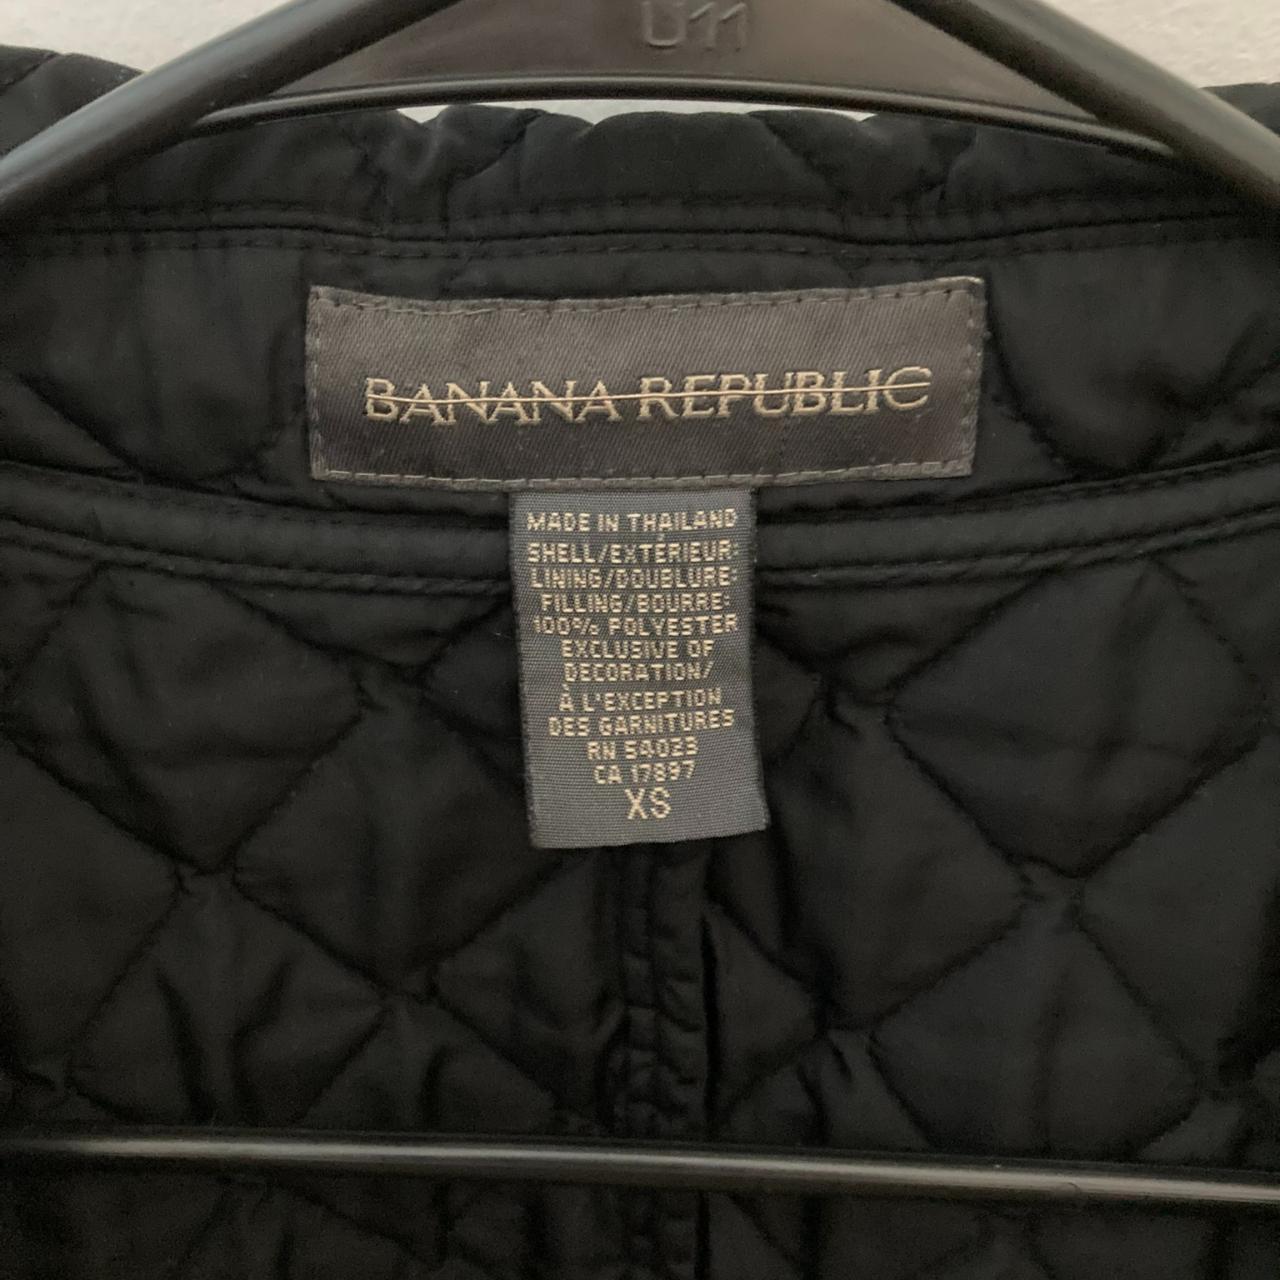 Banana Republic Men's Solid Black Zipper Jacket Size XL RN 54023 CA 17897